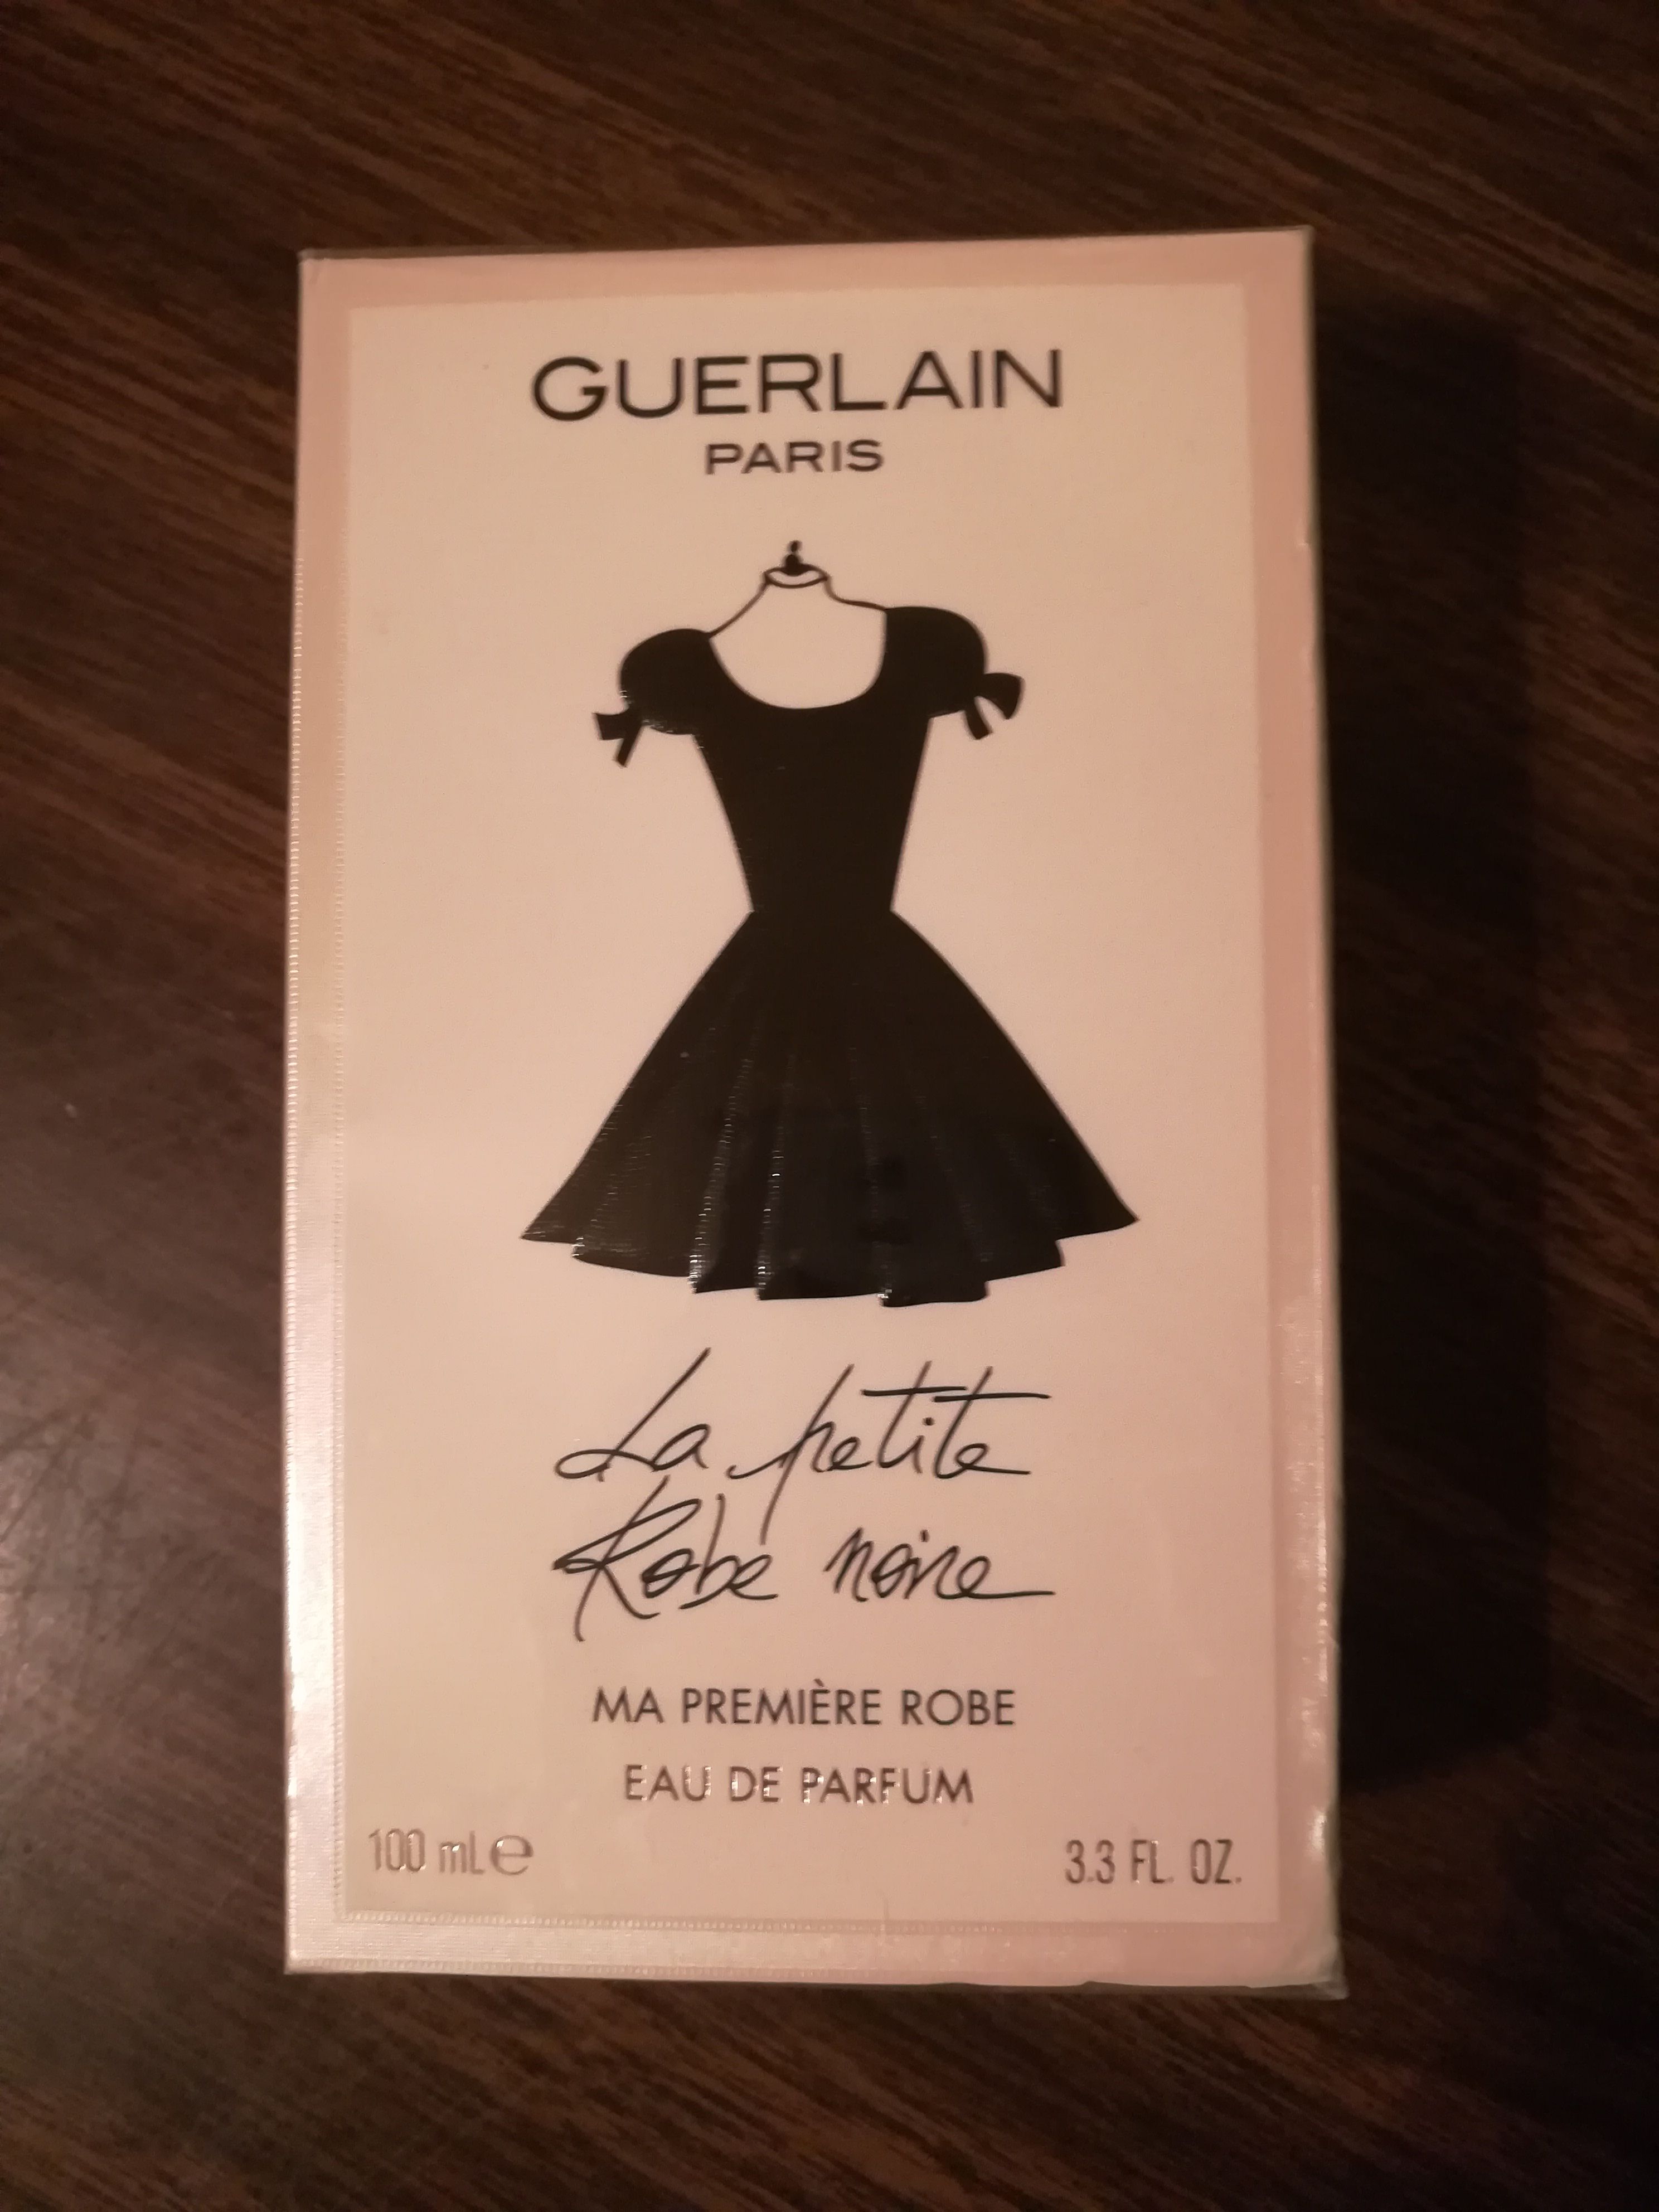 Guerlain fragrance, "La petite Robe noire"